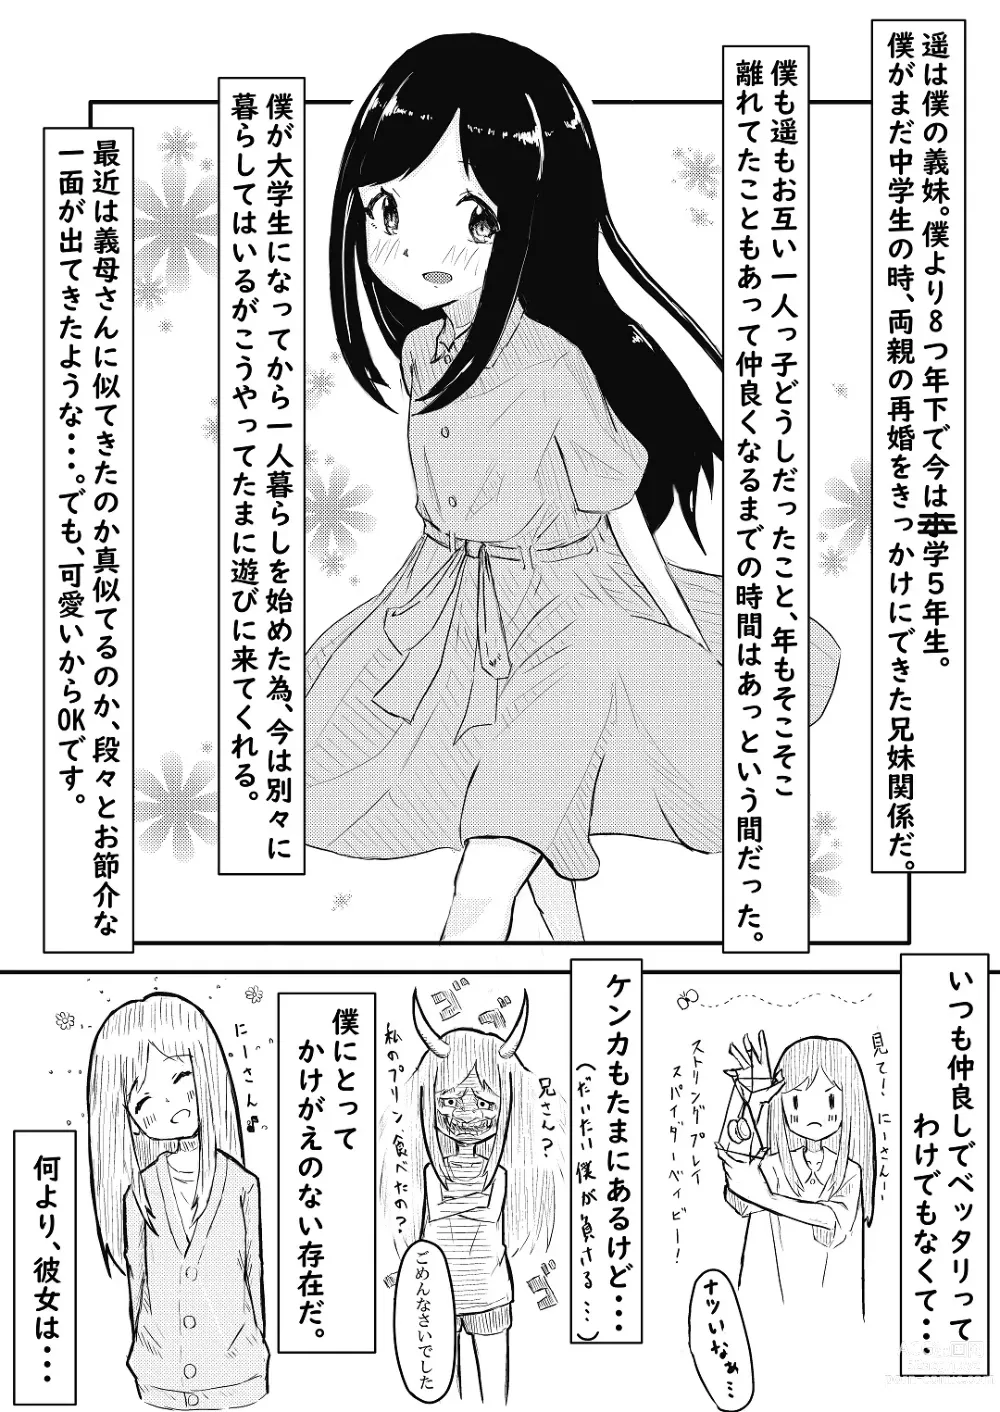 Page 4 of doujinshi Imouto ni Muchuu